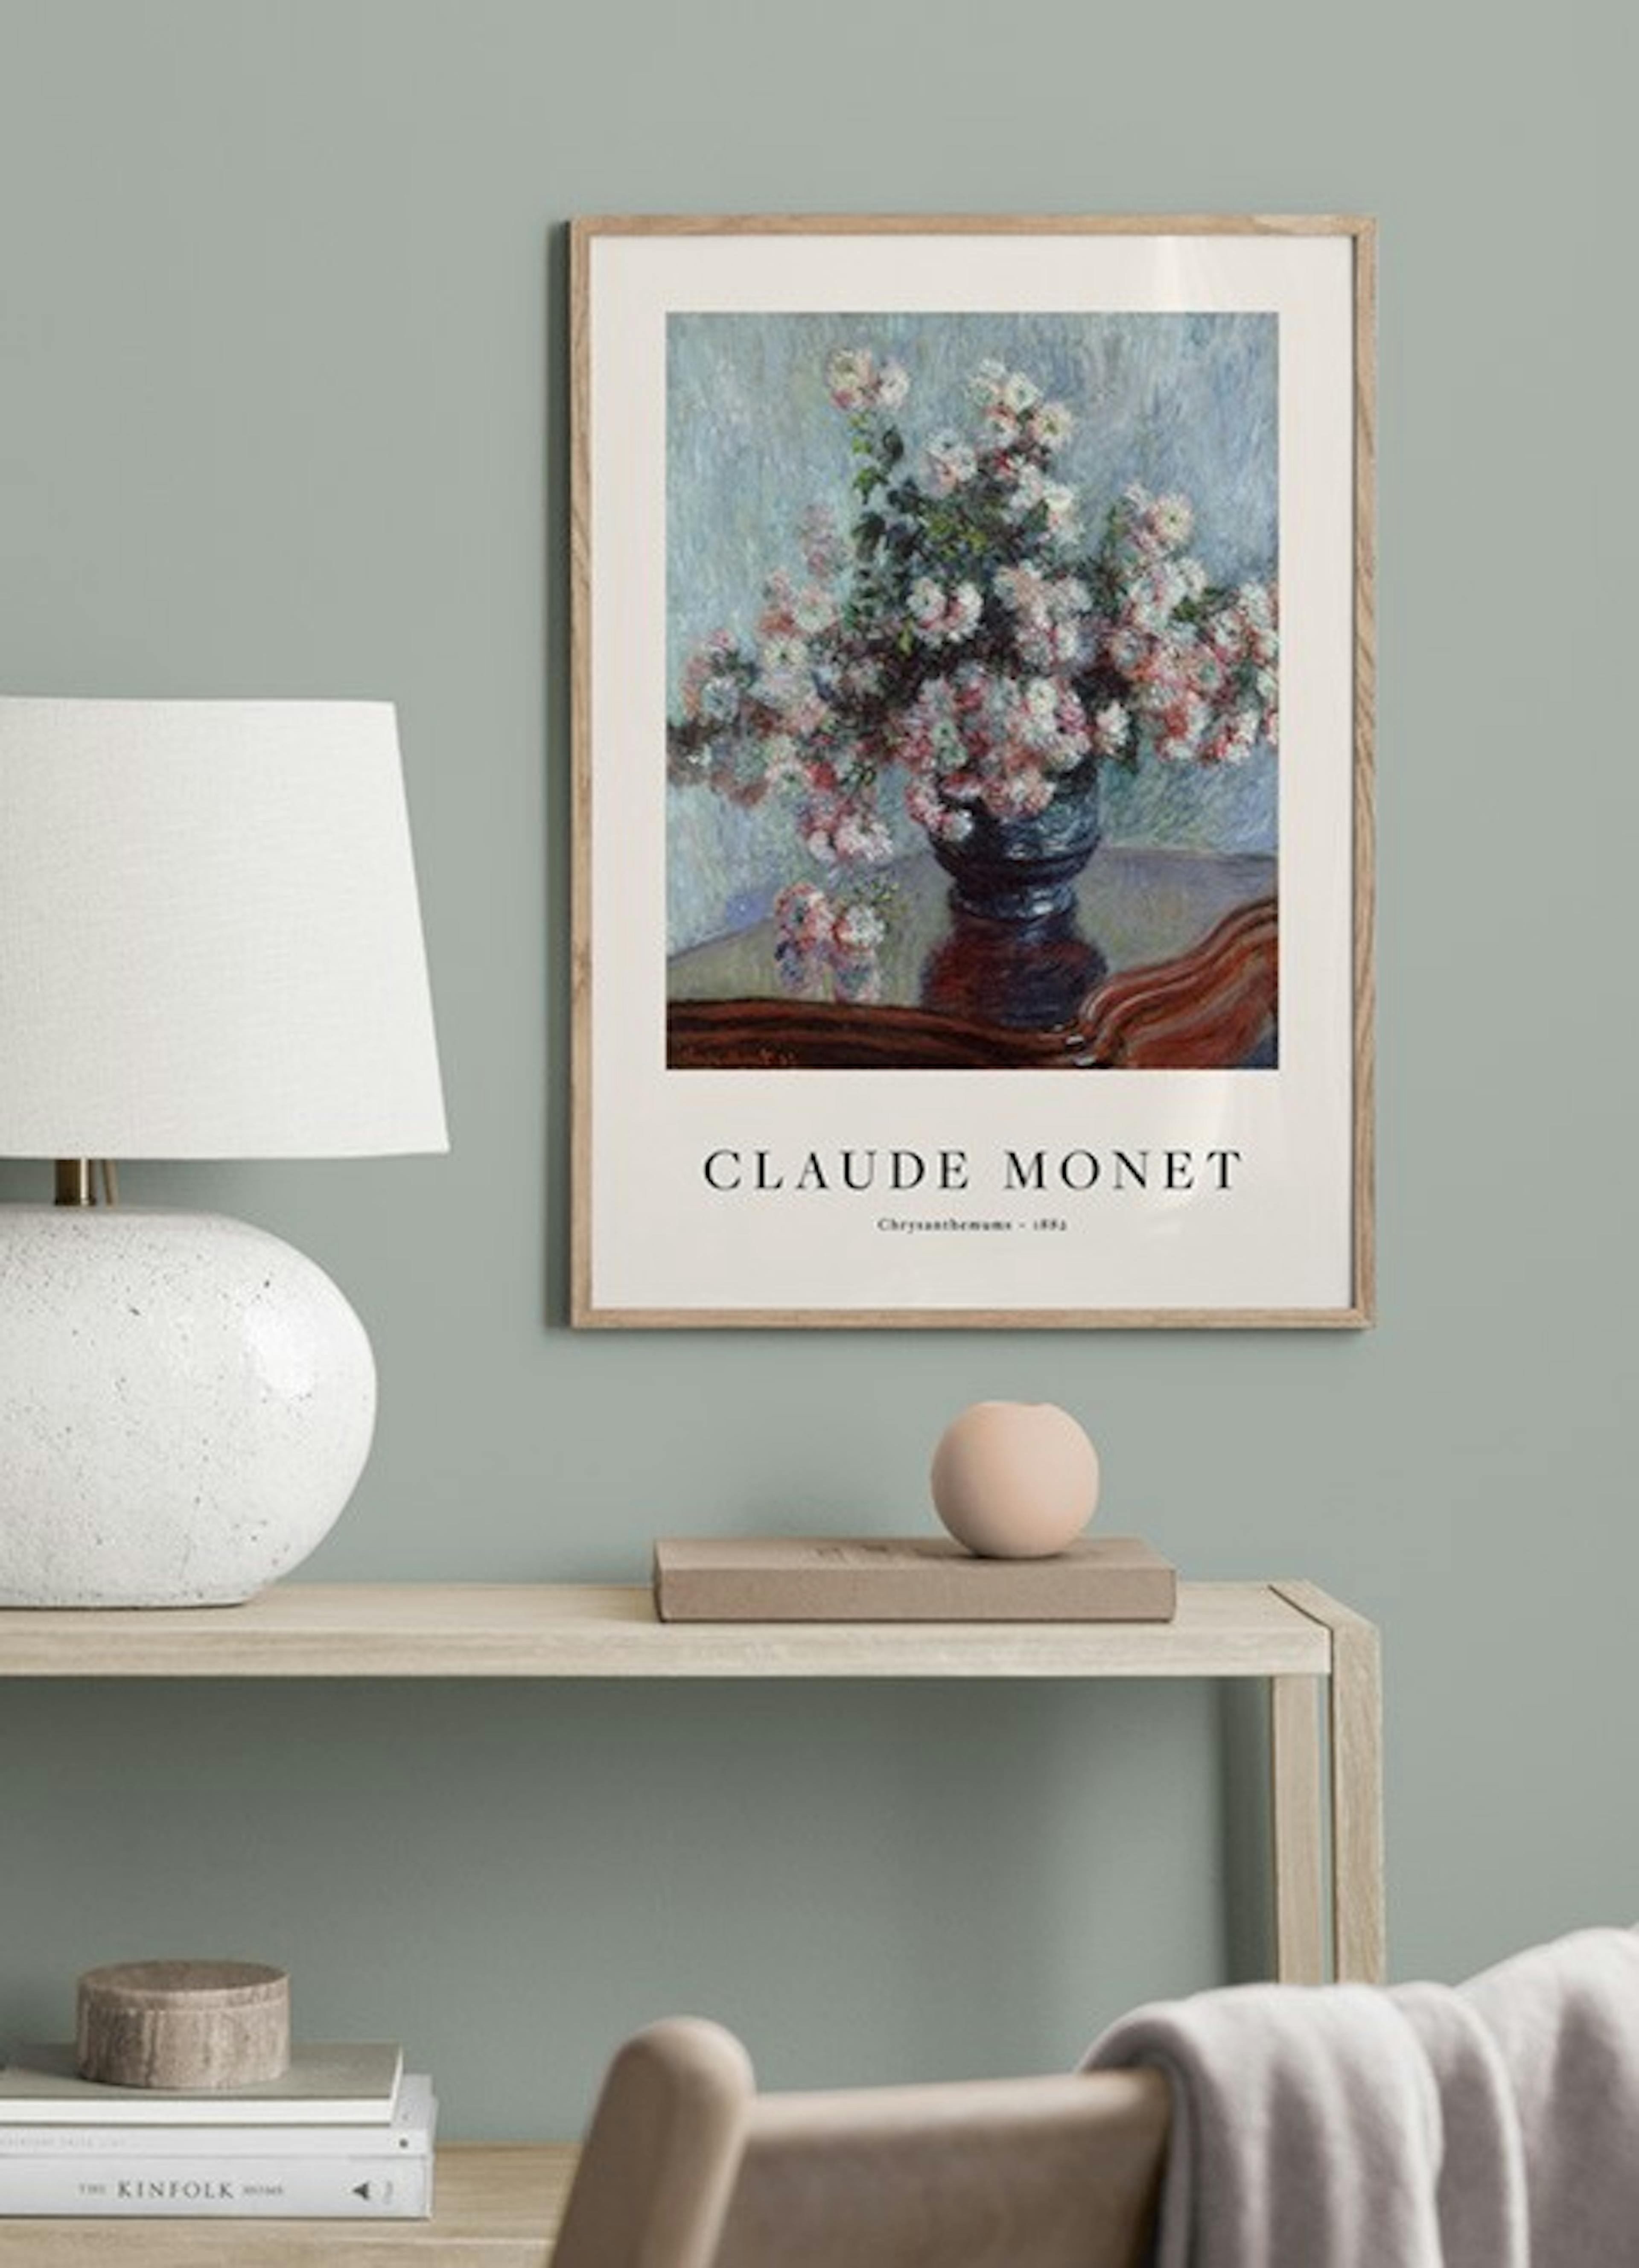 Monet - Chrysanthemums Print